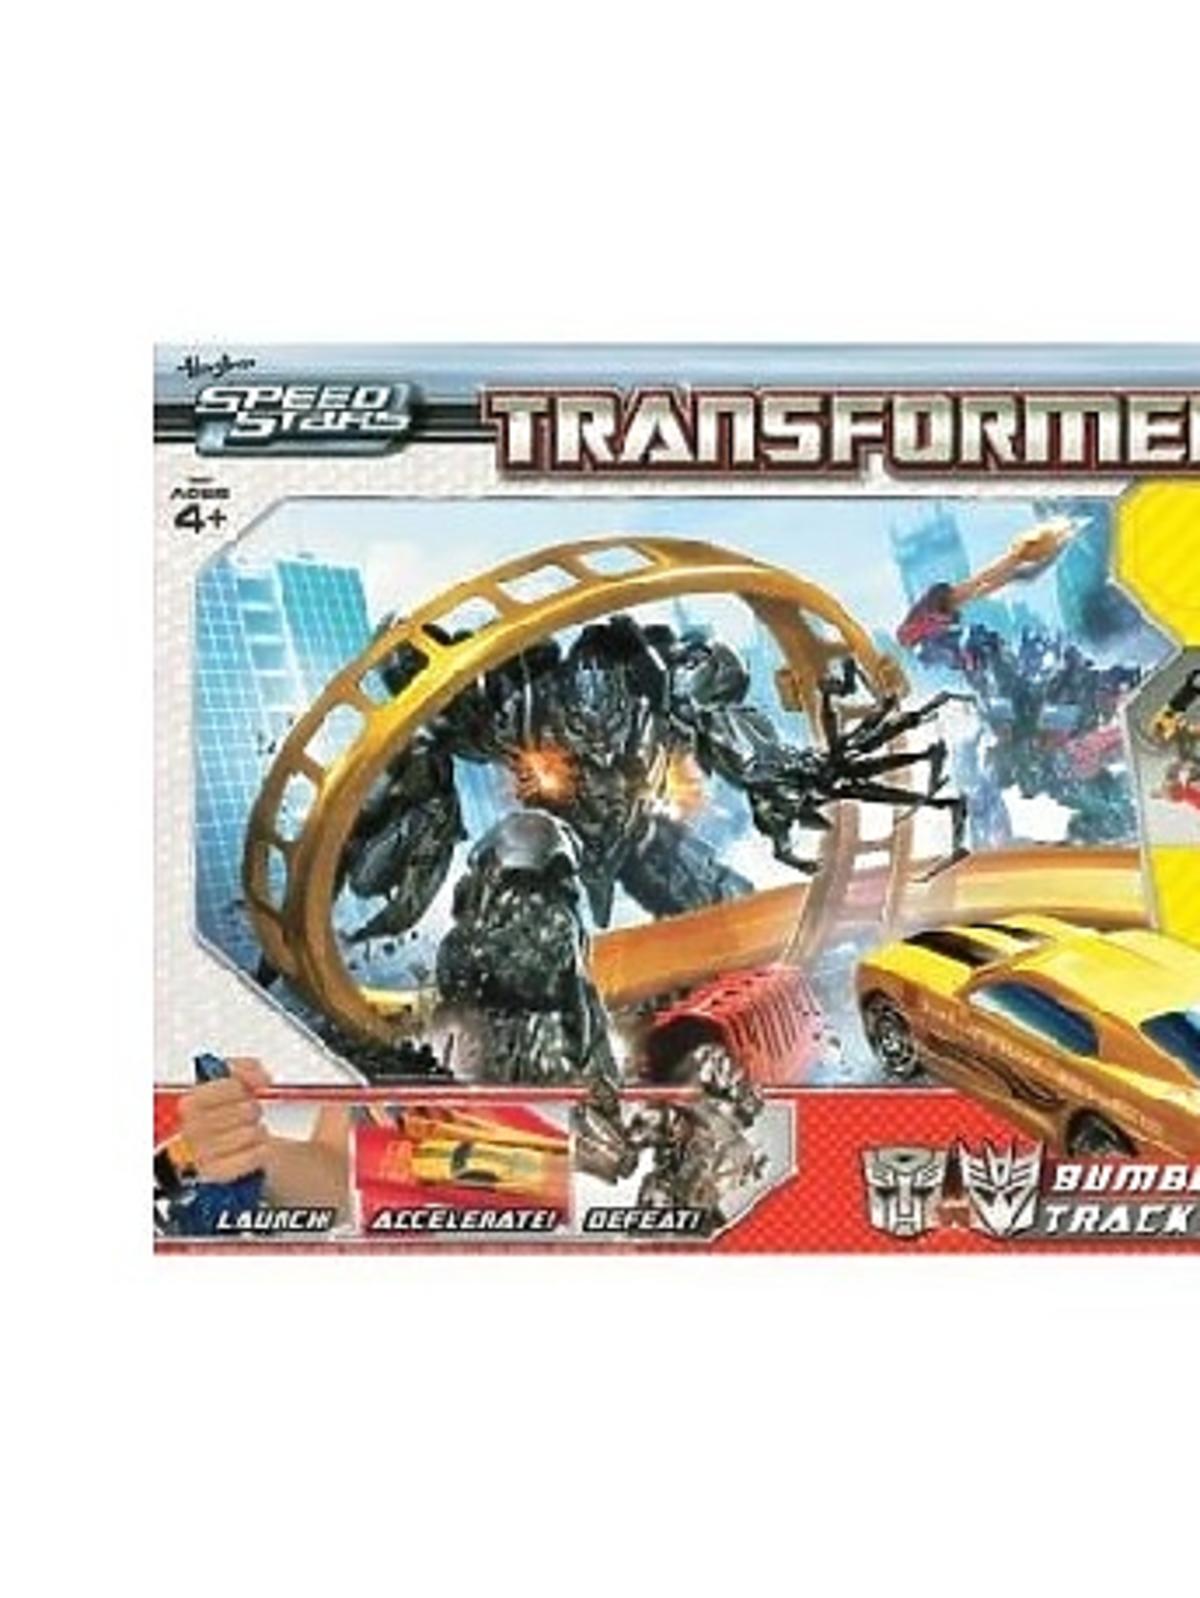 Prezent dla czterolatka, który kocha auta -  Elektroniczny tor wyścigowy BumbleBee, Hasbro Transformers